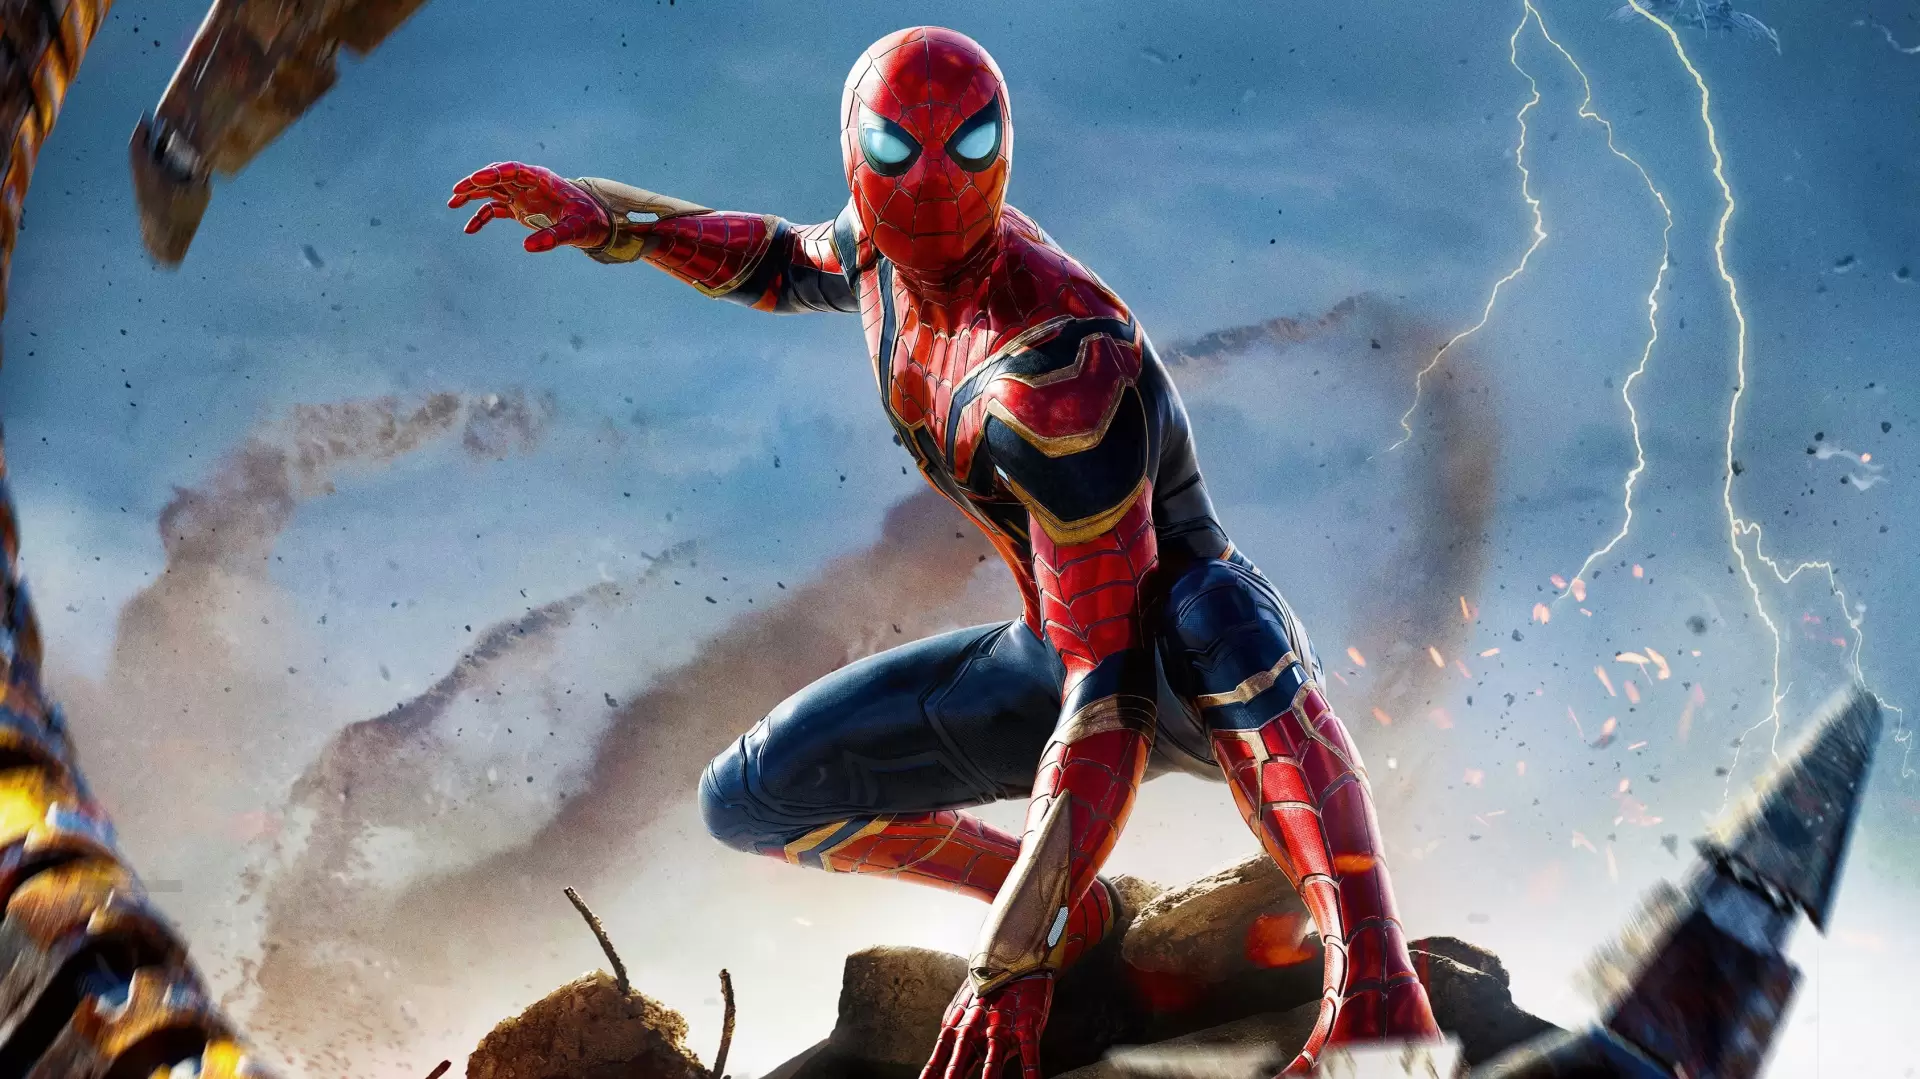 دانلود فیلم Spider-Man: No Way Home 2021 (مرد عنکبوتی: راهی به خانه نیست) با زیرنویس فارسی و تماشای آنلاین